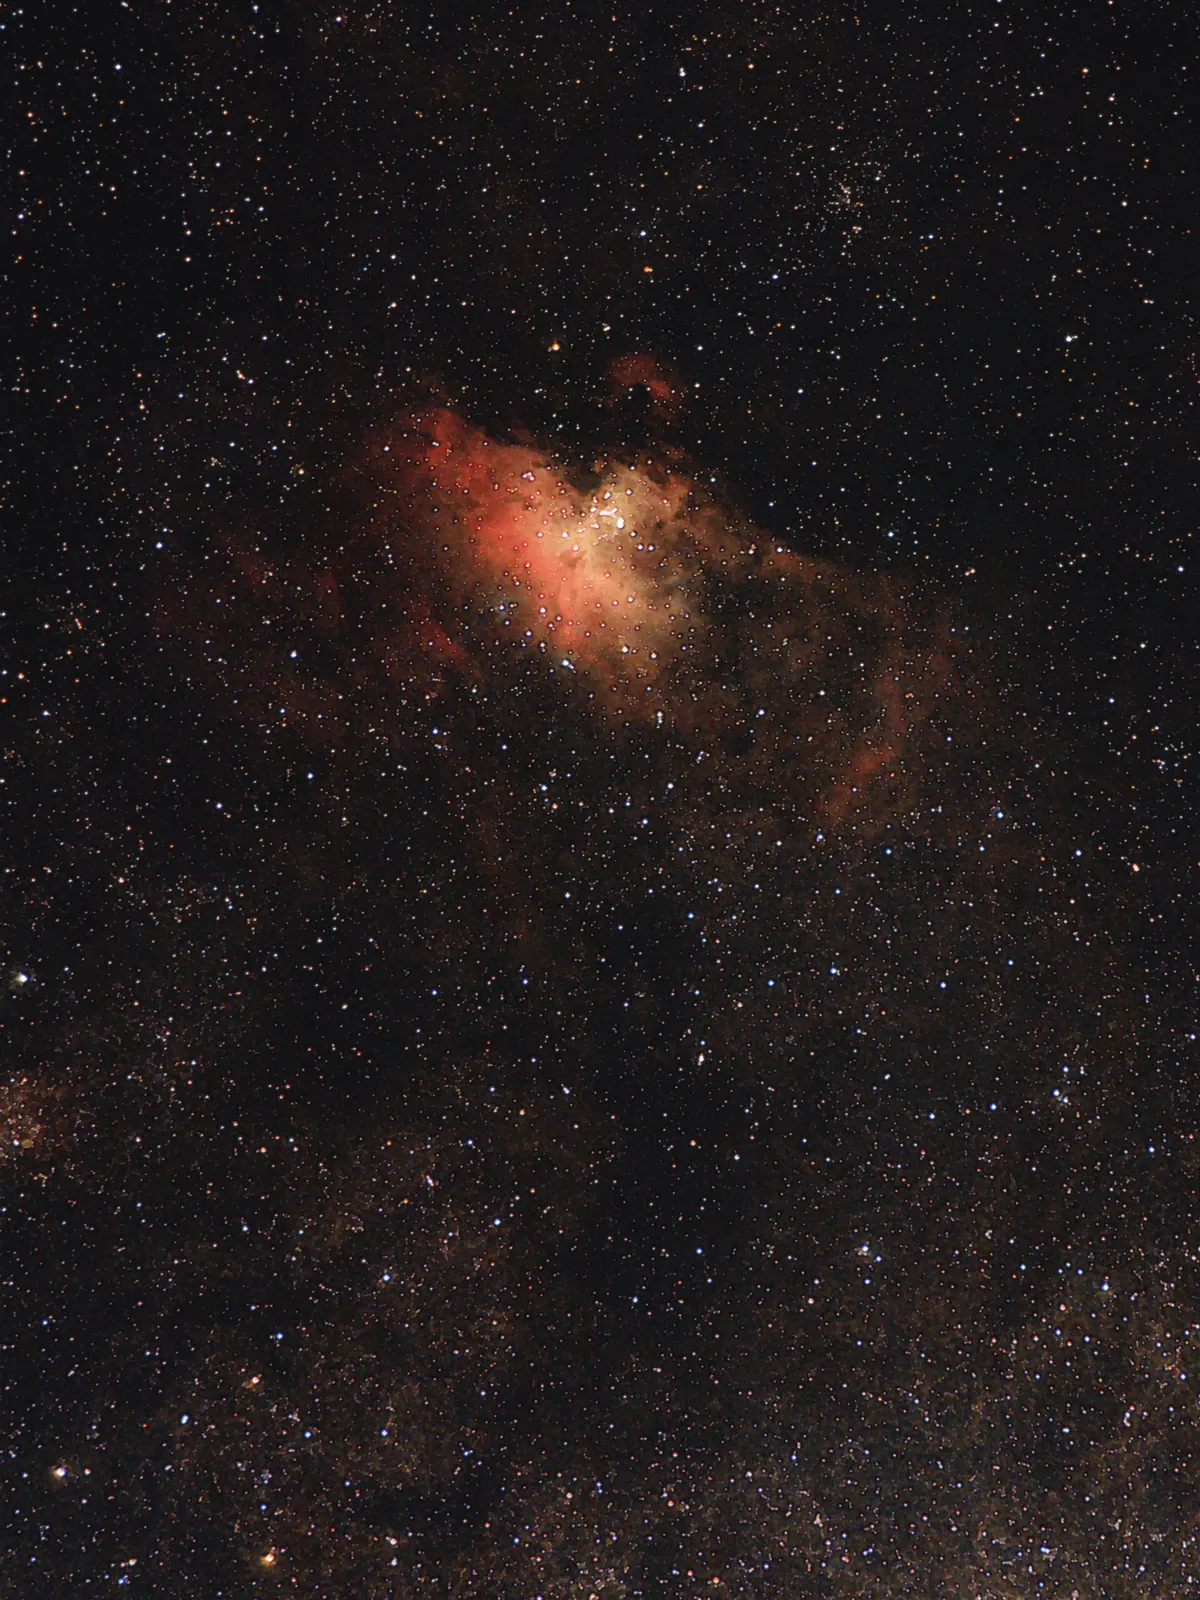 The Eagle Nebula by Dave Walker, UK.